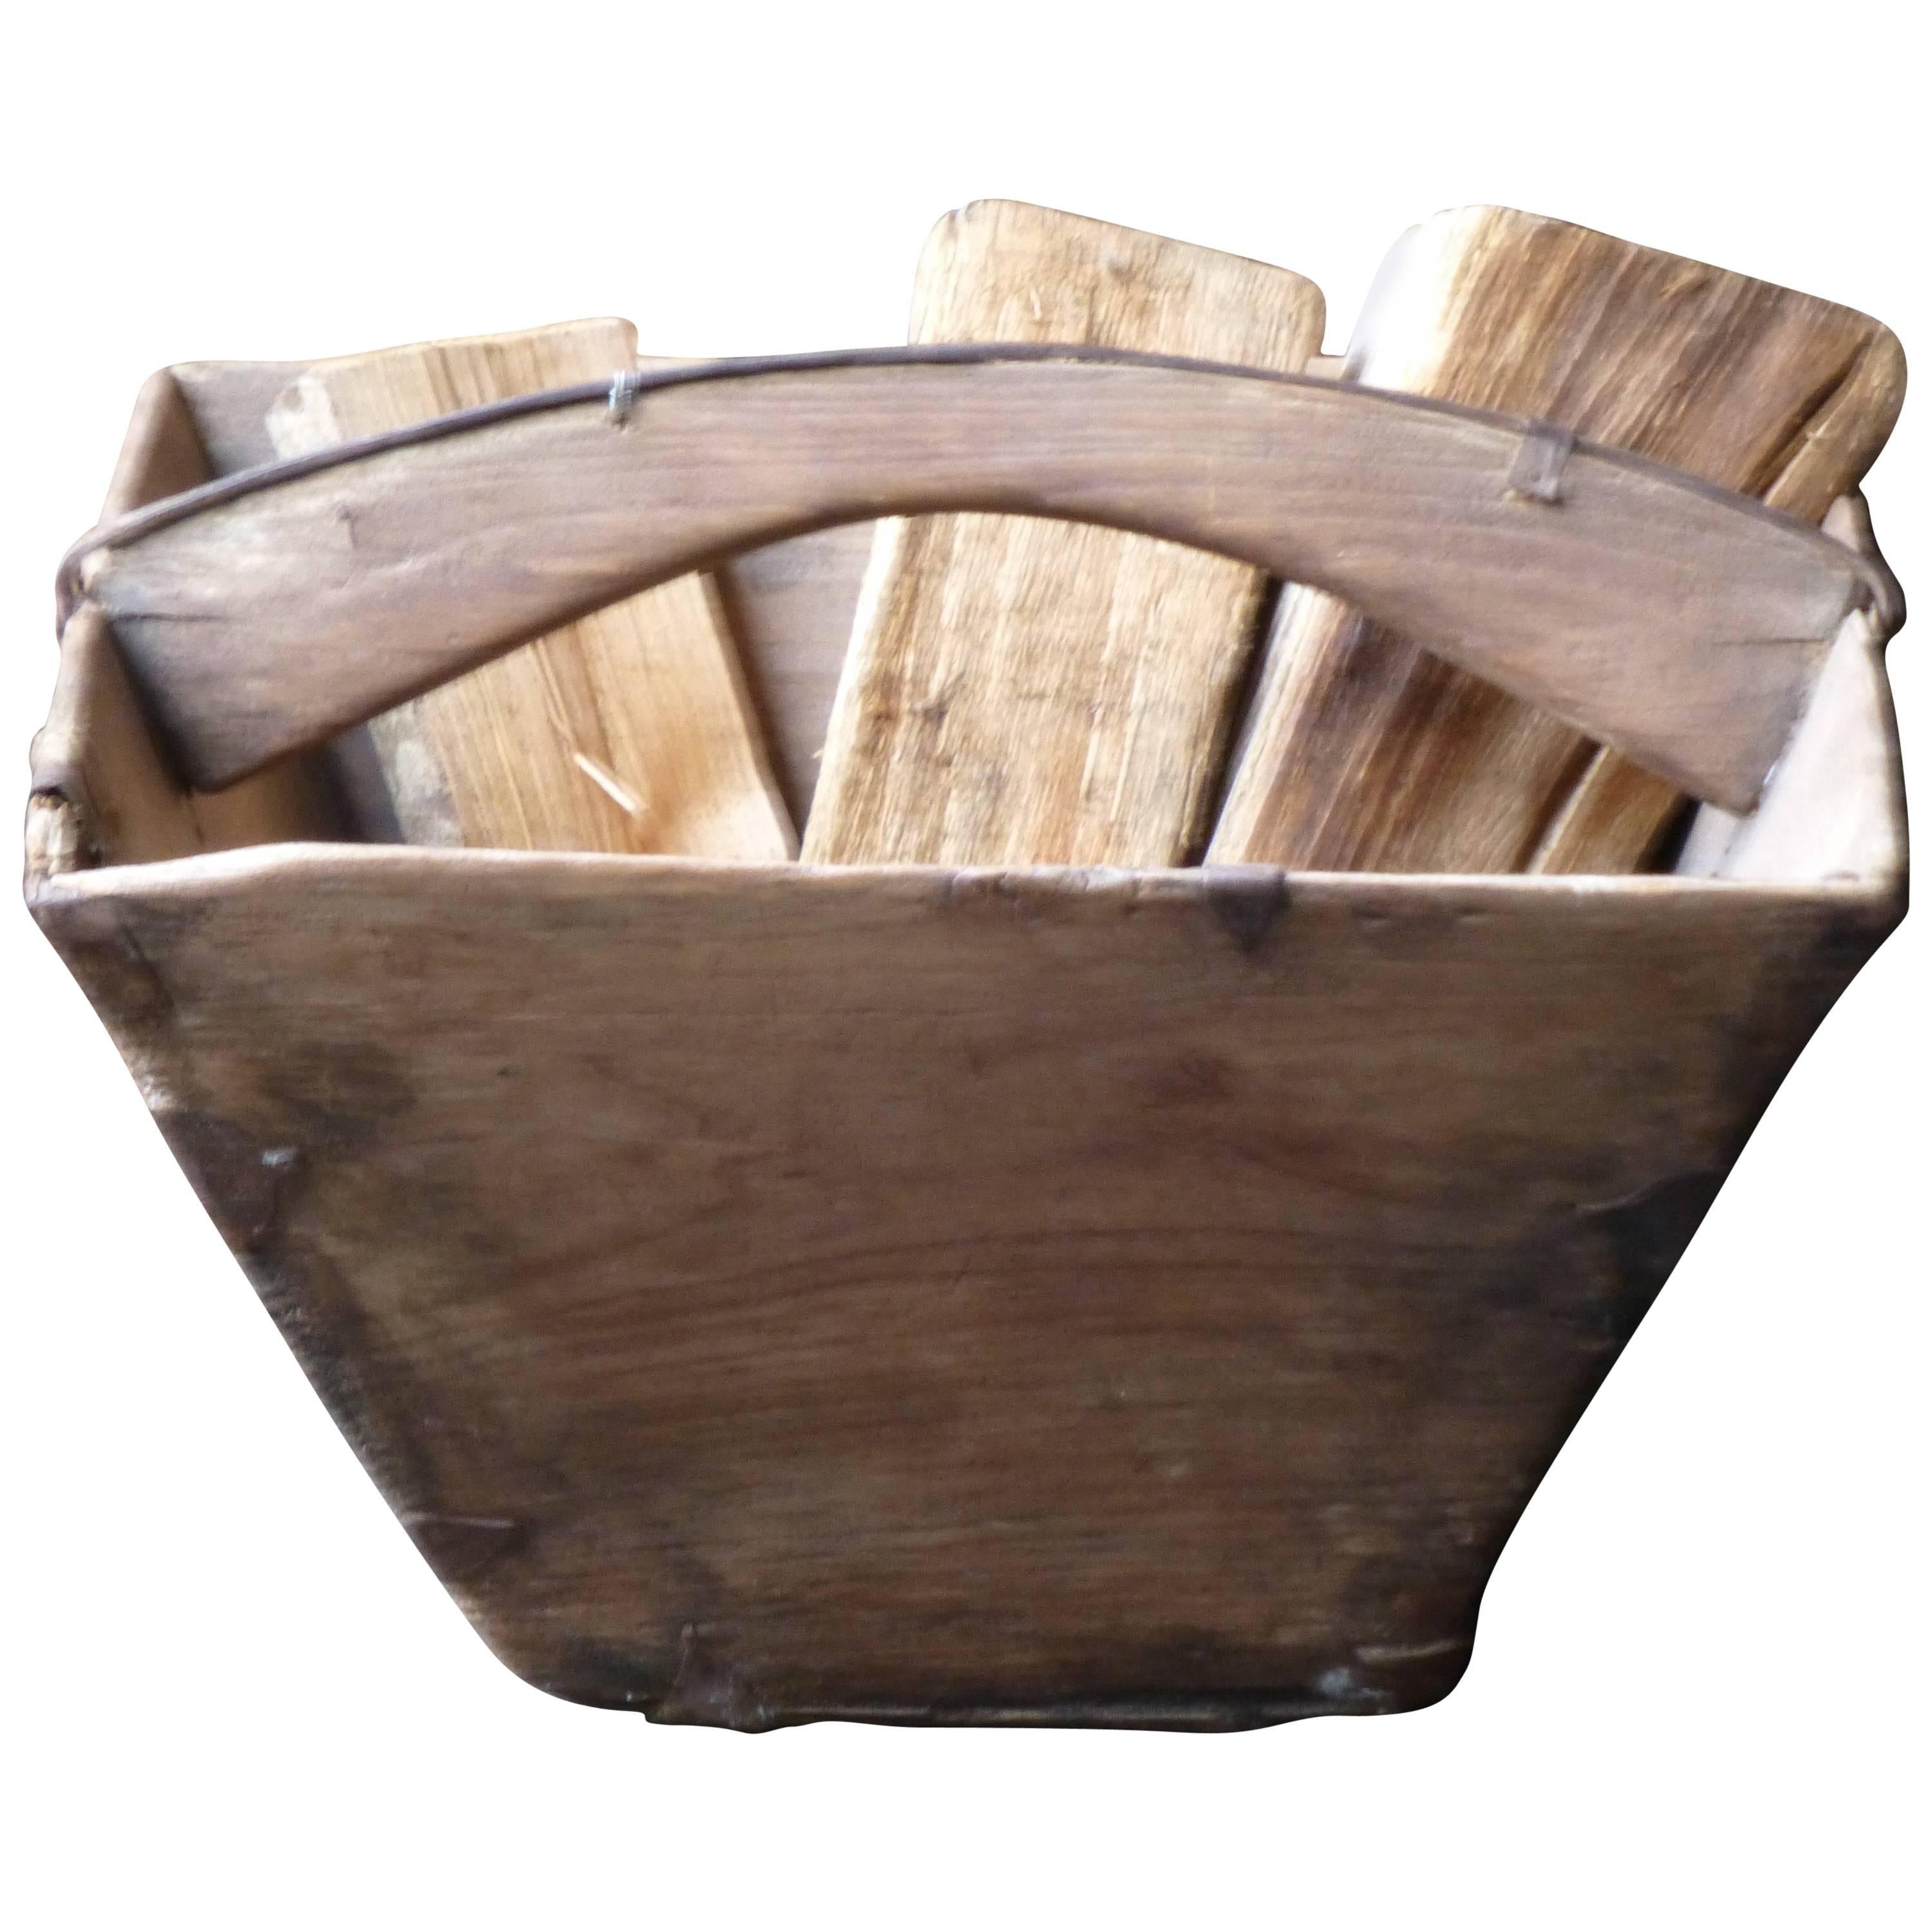 19th Century Wooden Log Basket or Log Holder